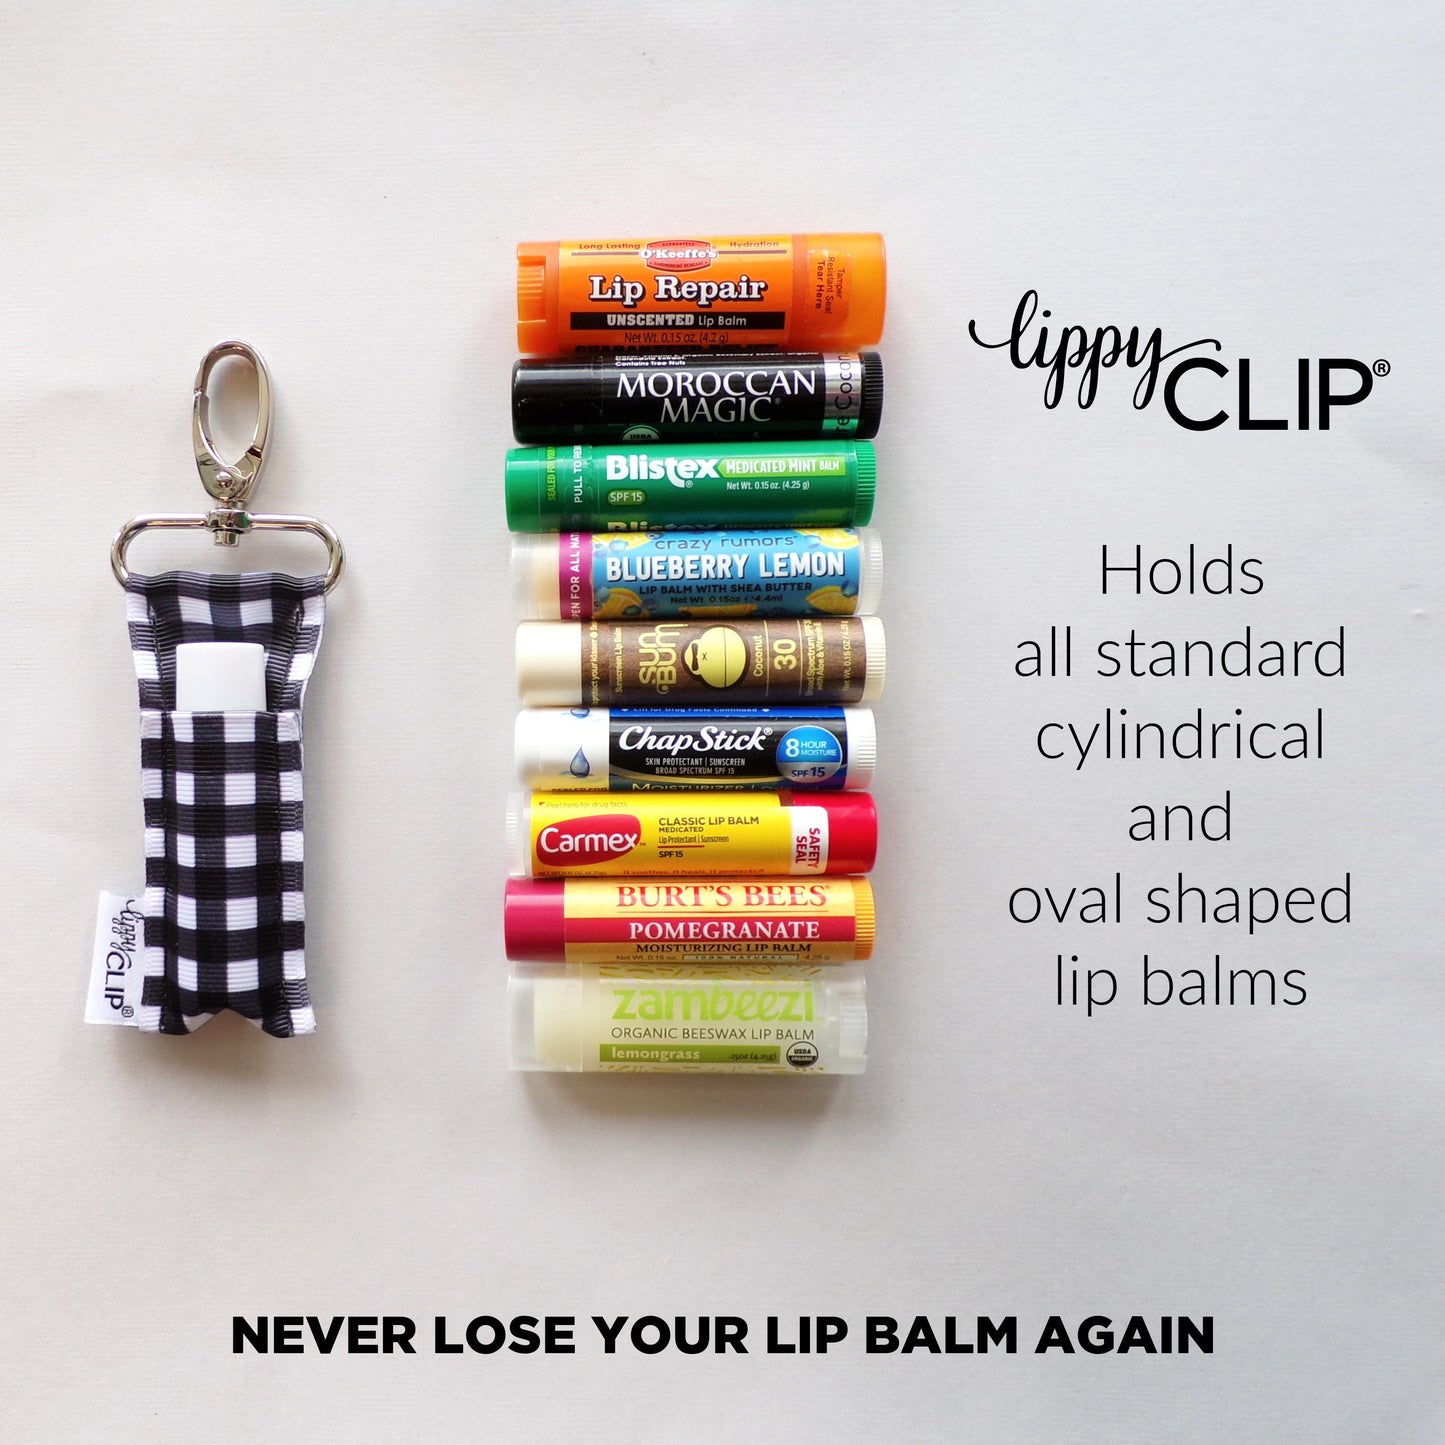 Cub LippyClip® Lip Balm Holder